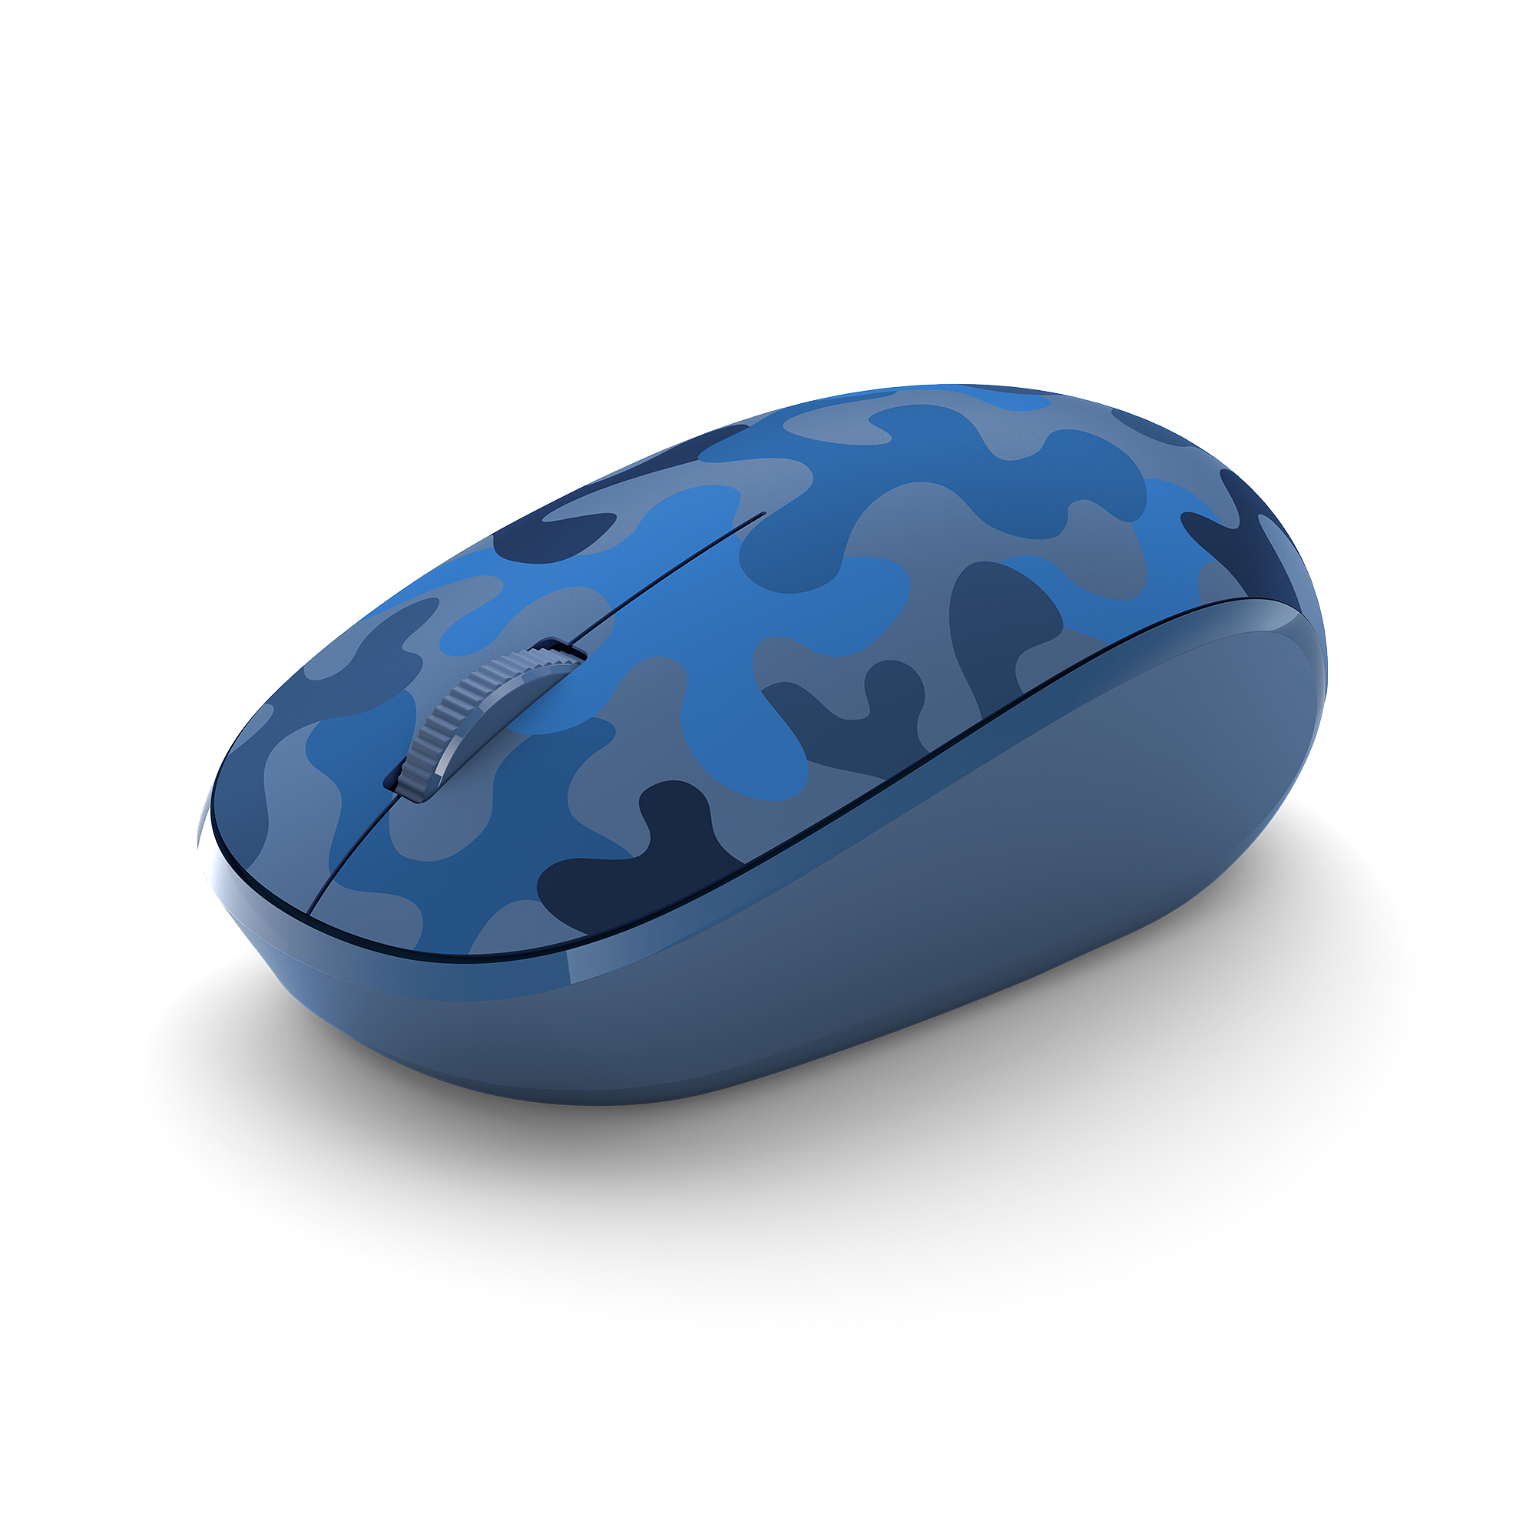 Microsoft 8KX-00027 Bluetooth Mouse Camo - 1